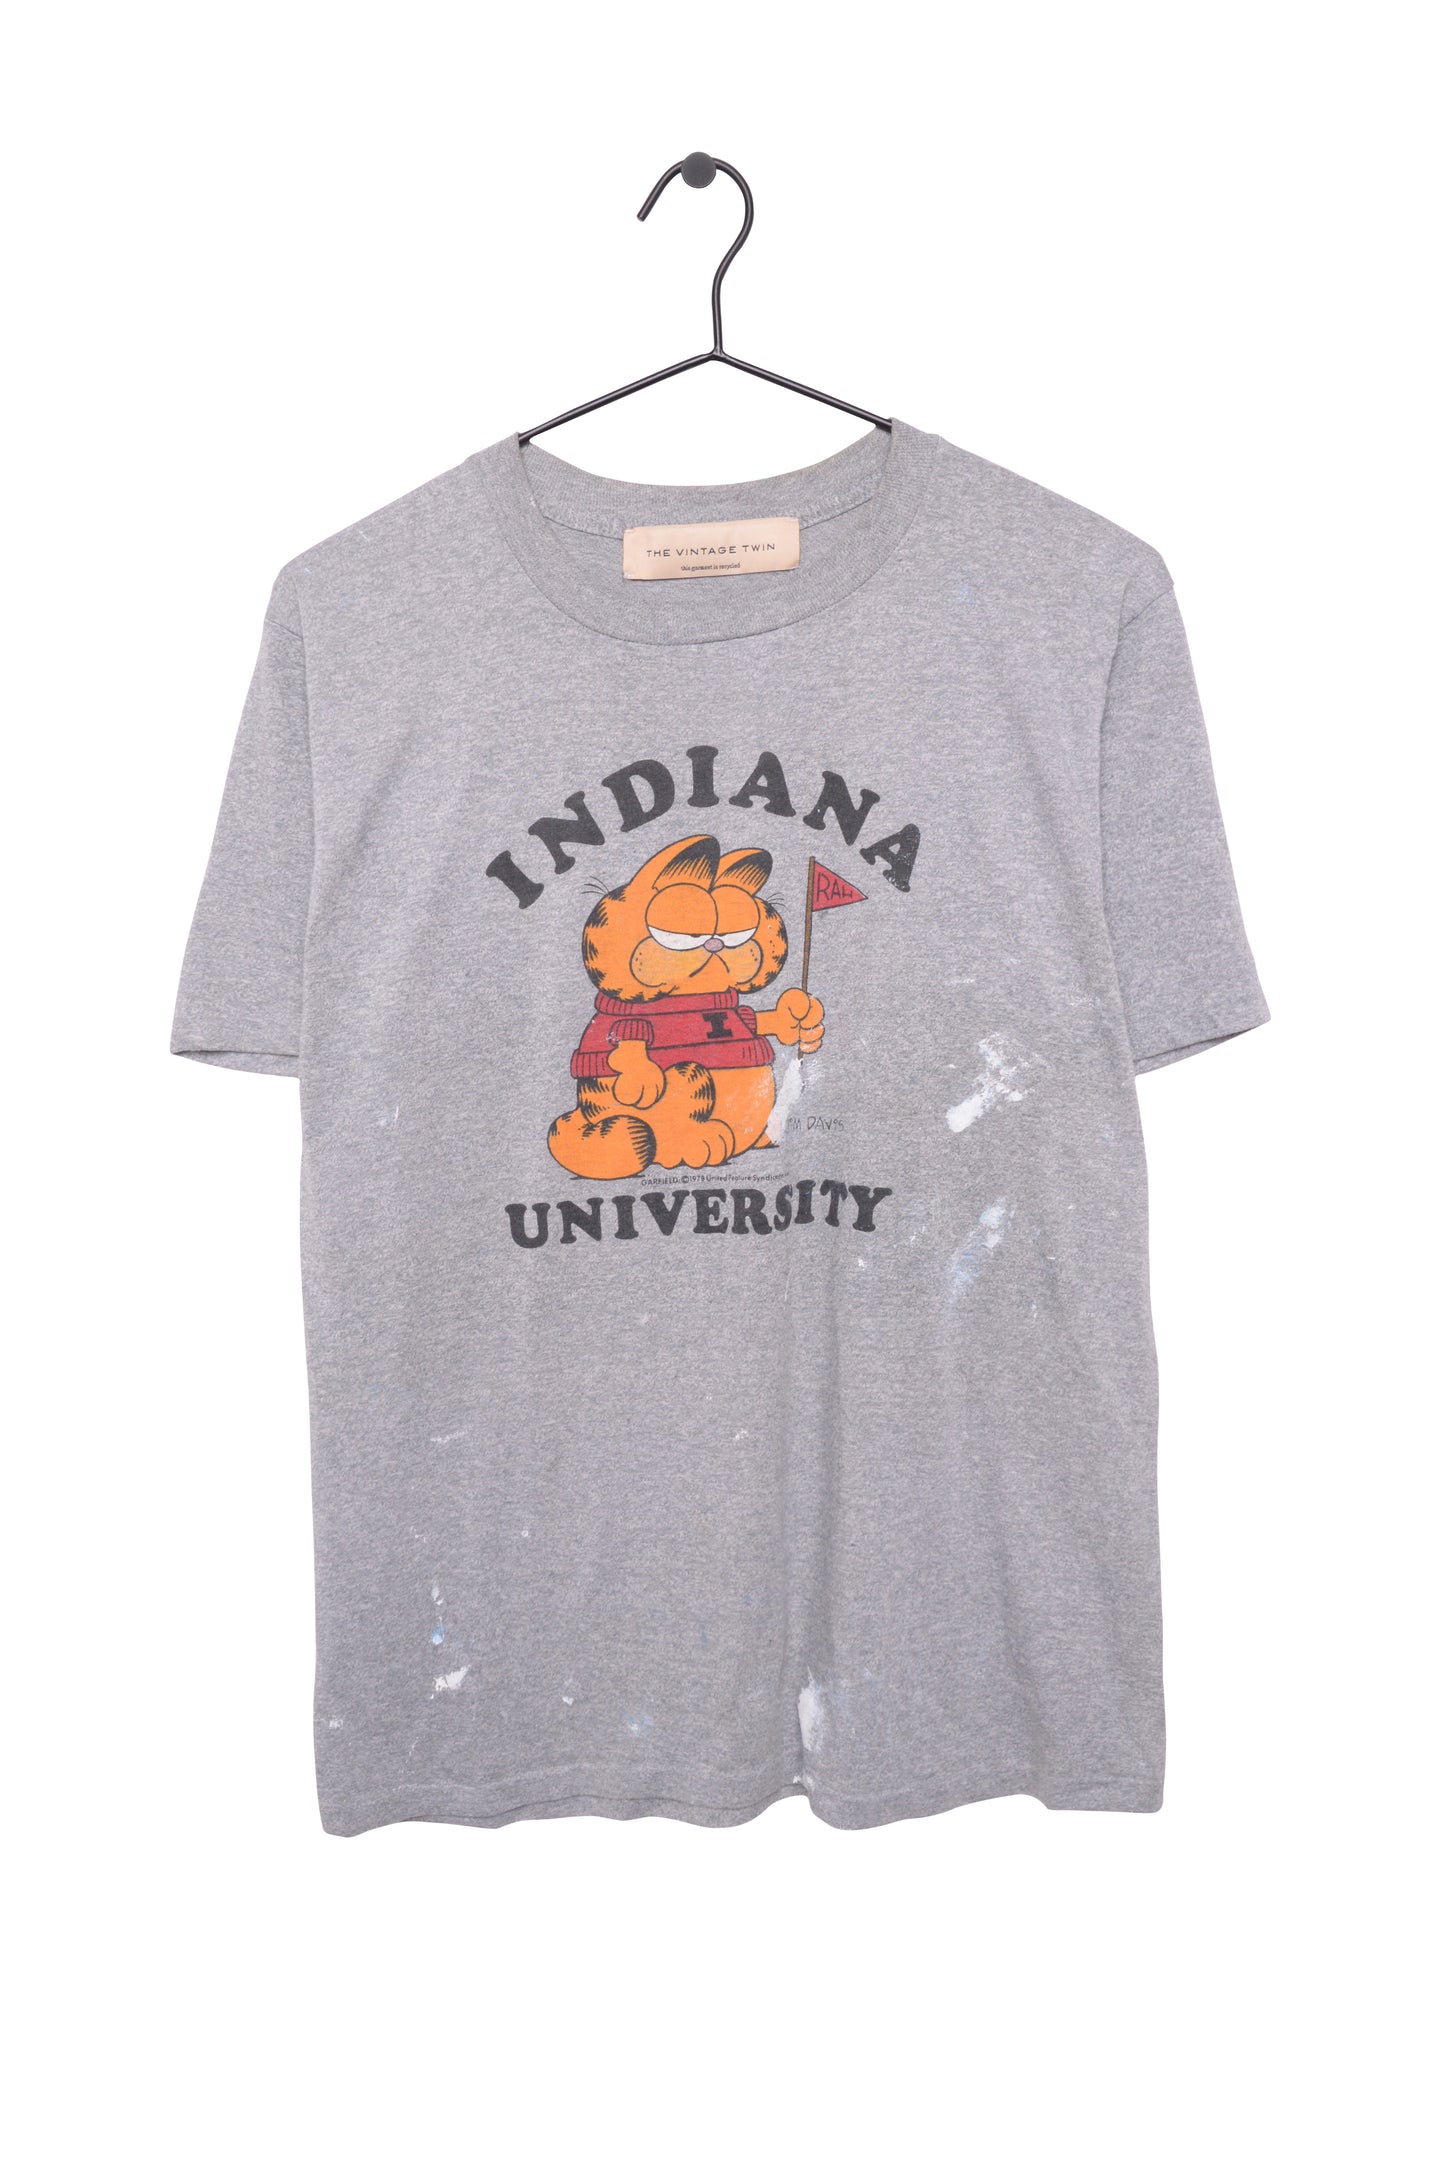 1978 Indiana University Garfield Tee